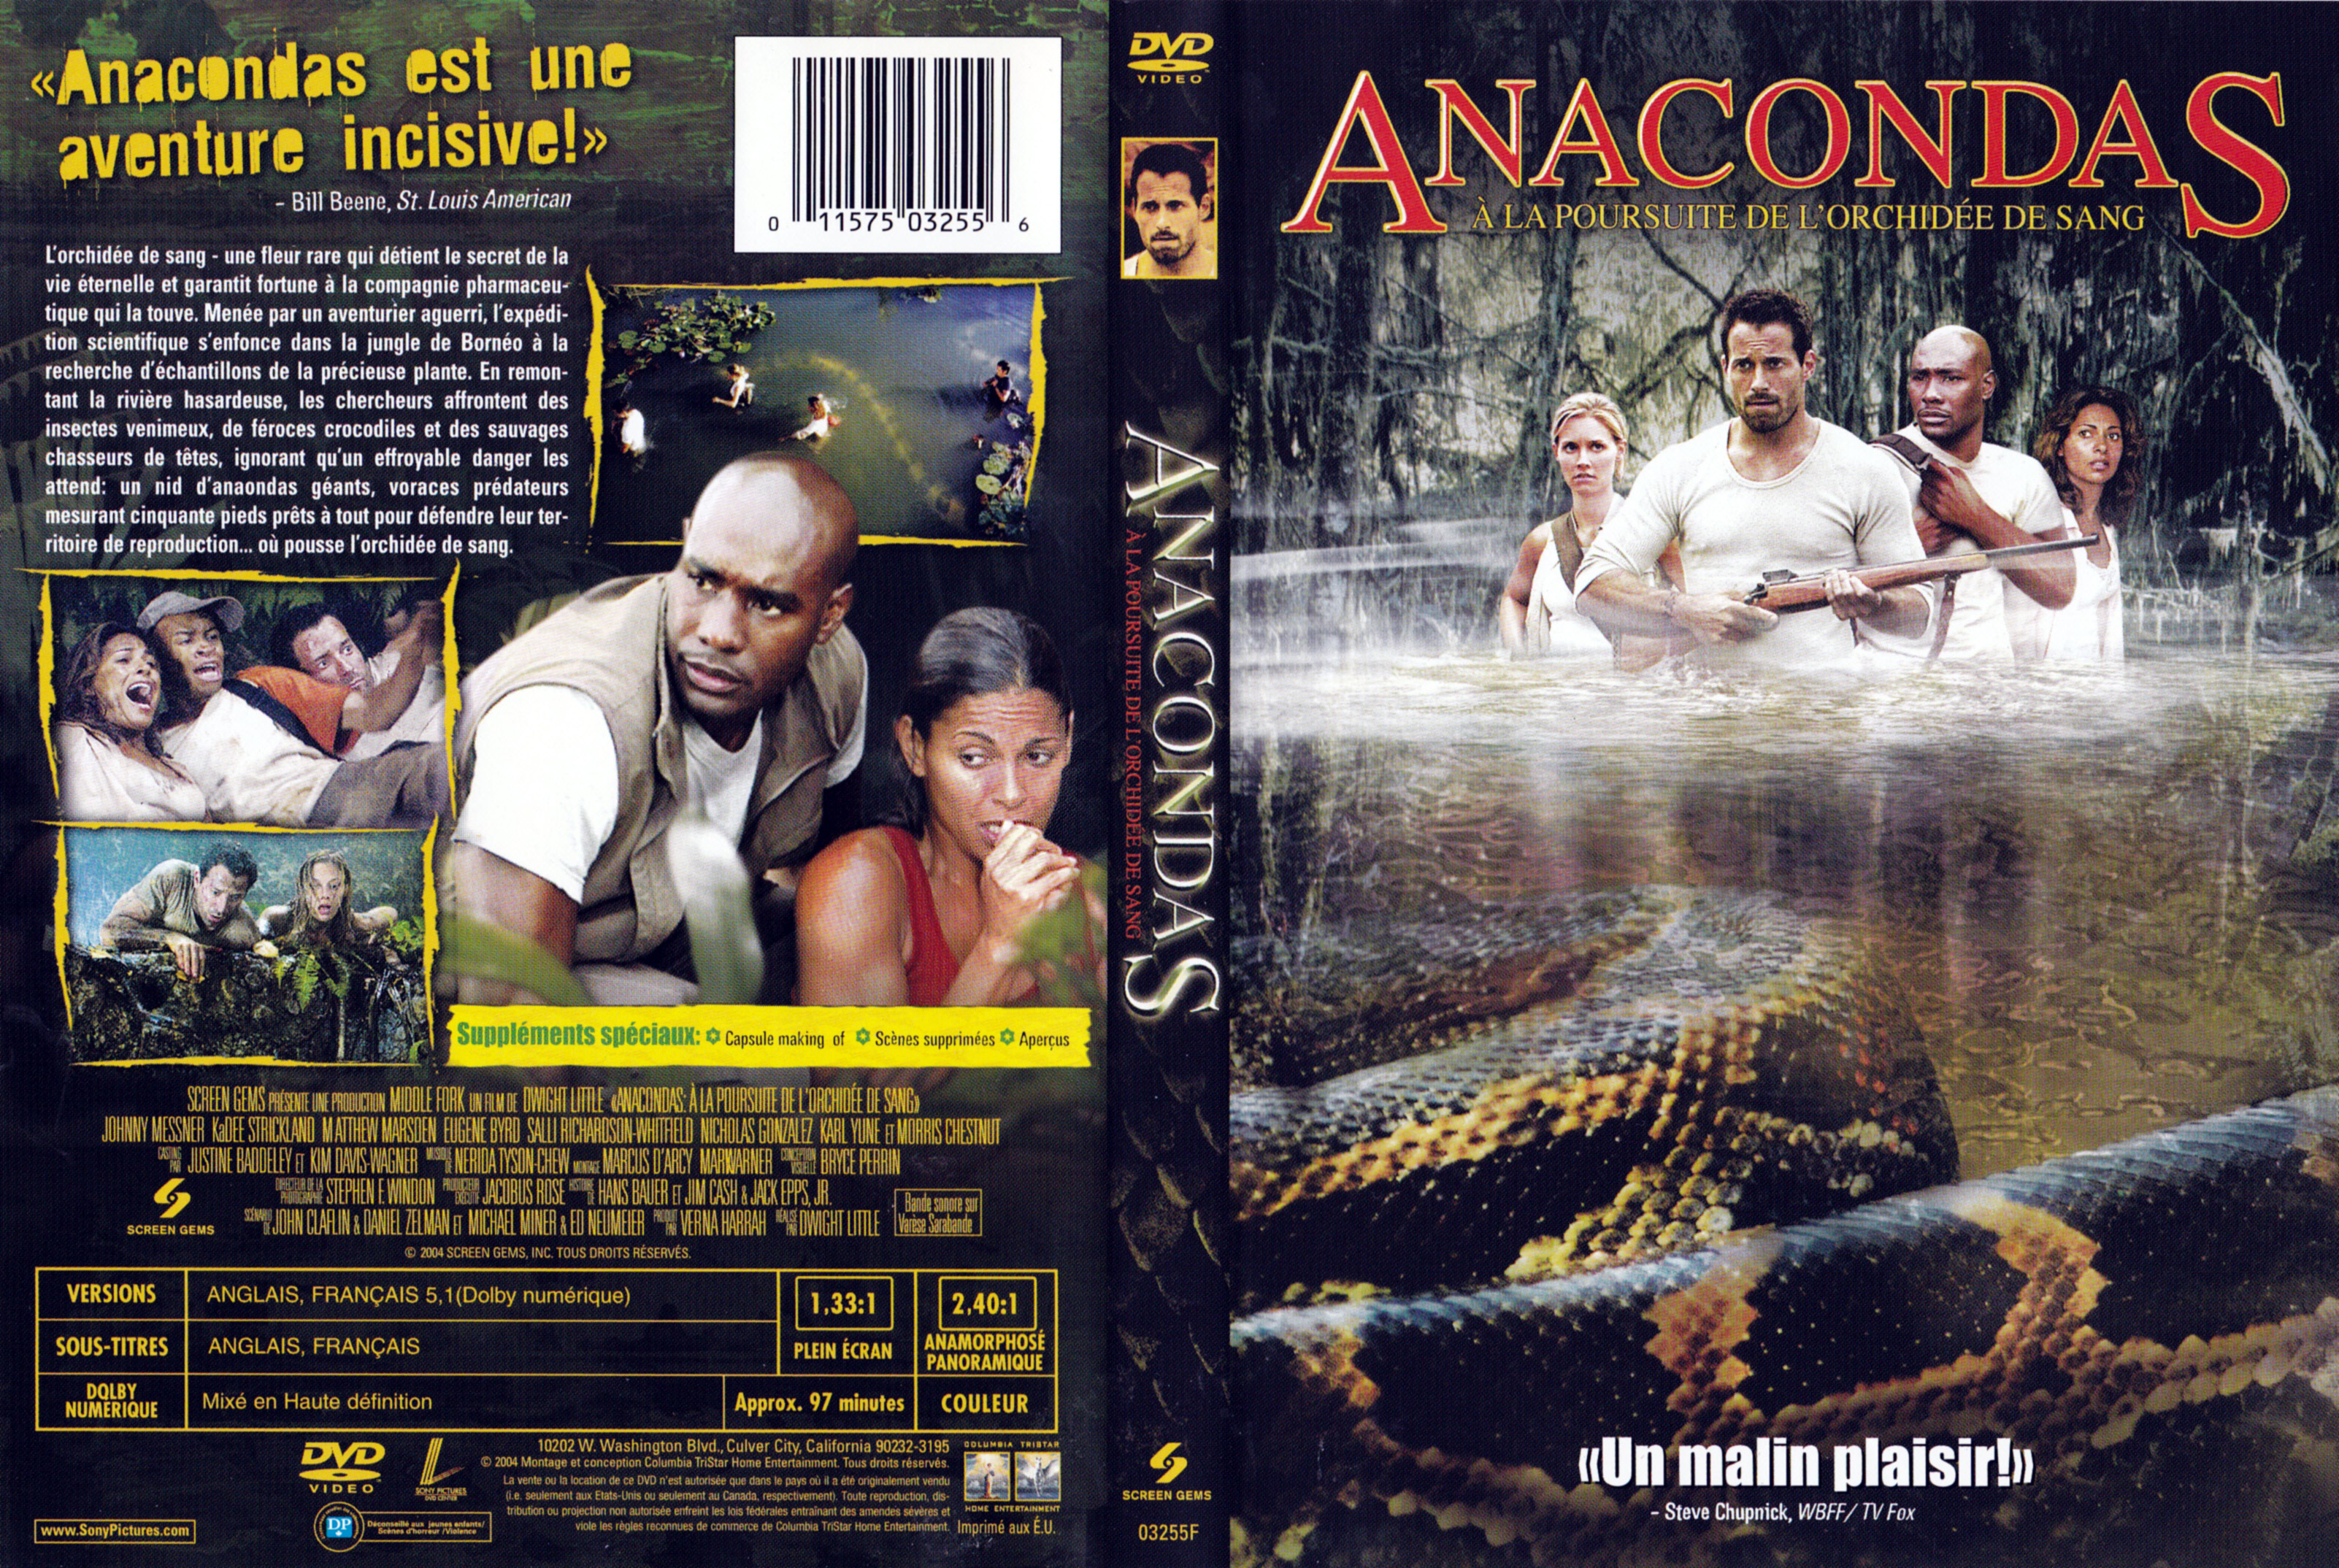 Jaquette DVD Anacondas (Canadienne)